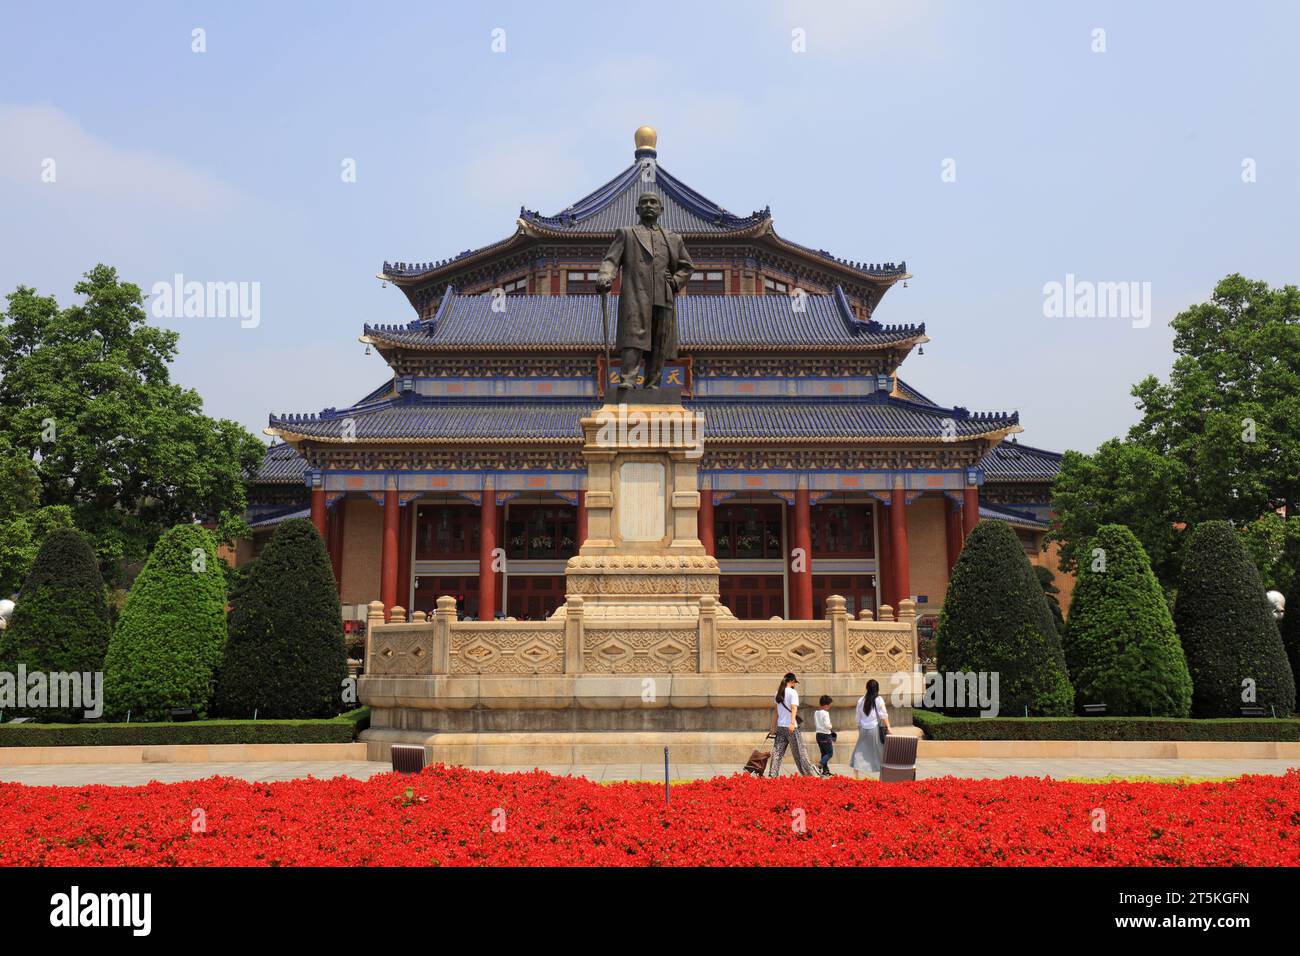 Guangzhou, China - April 5, 2019: Sun Yat-sen Statue in Zhongshan Memorial Hall, Guangzhou, Guangdong Province, China Stock Photo